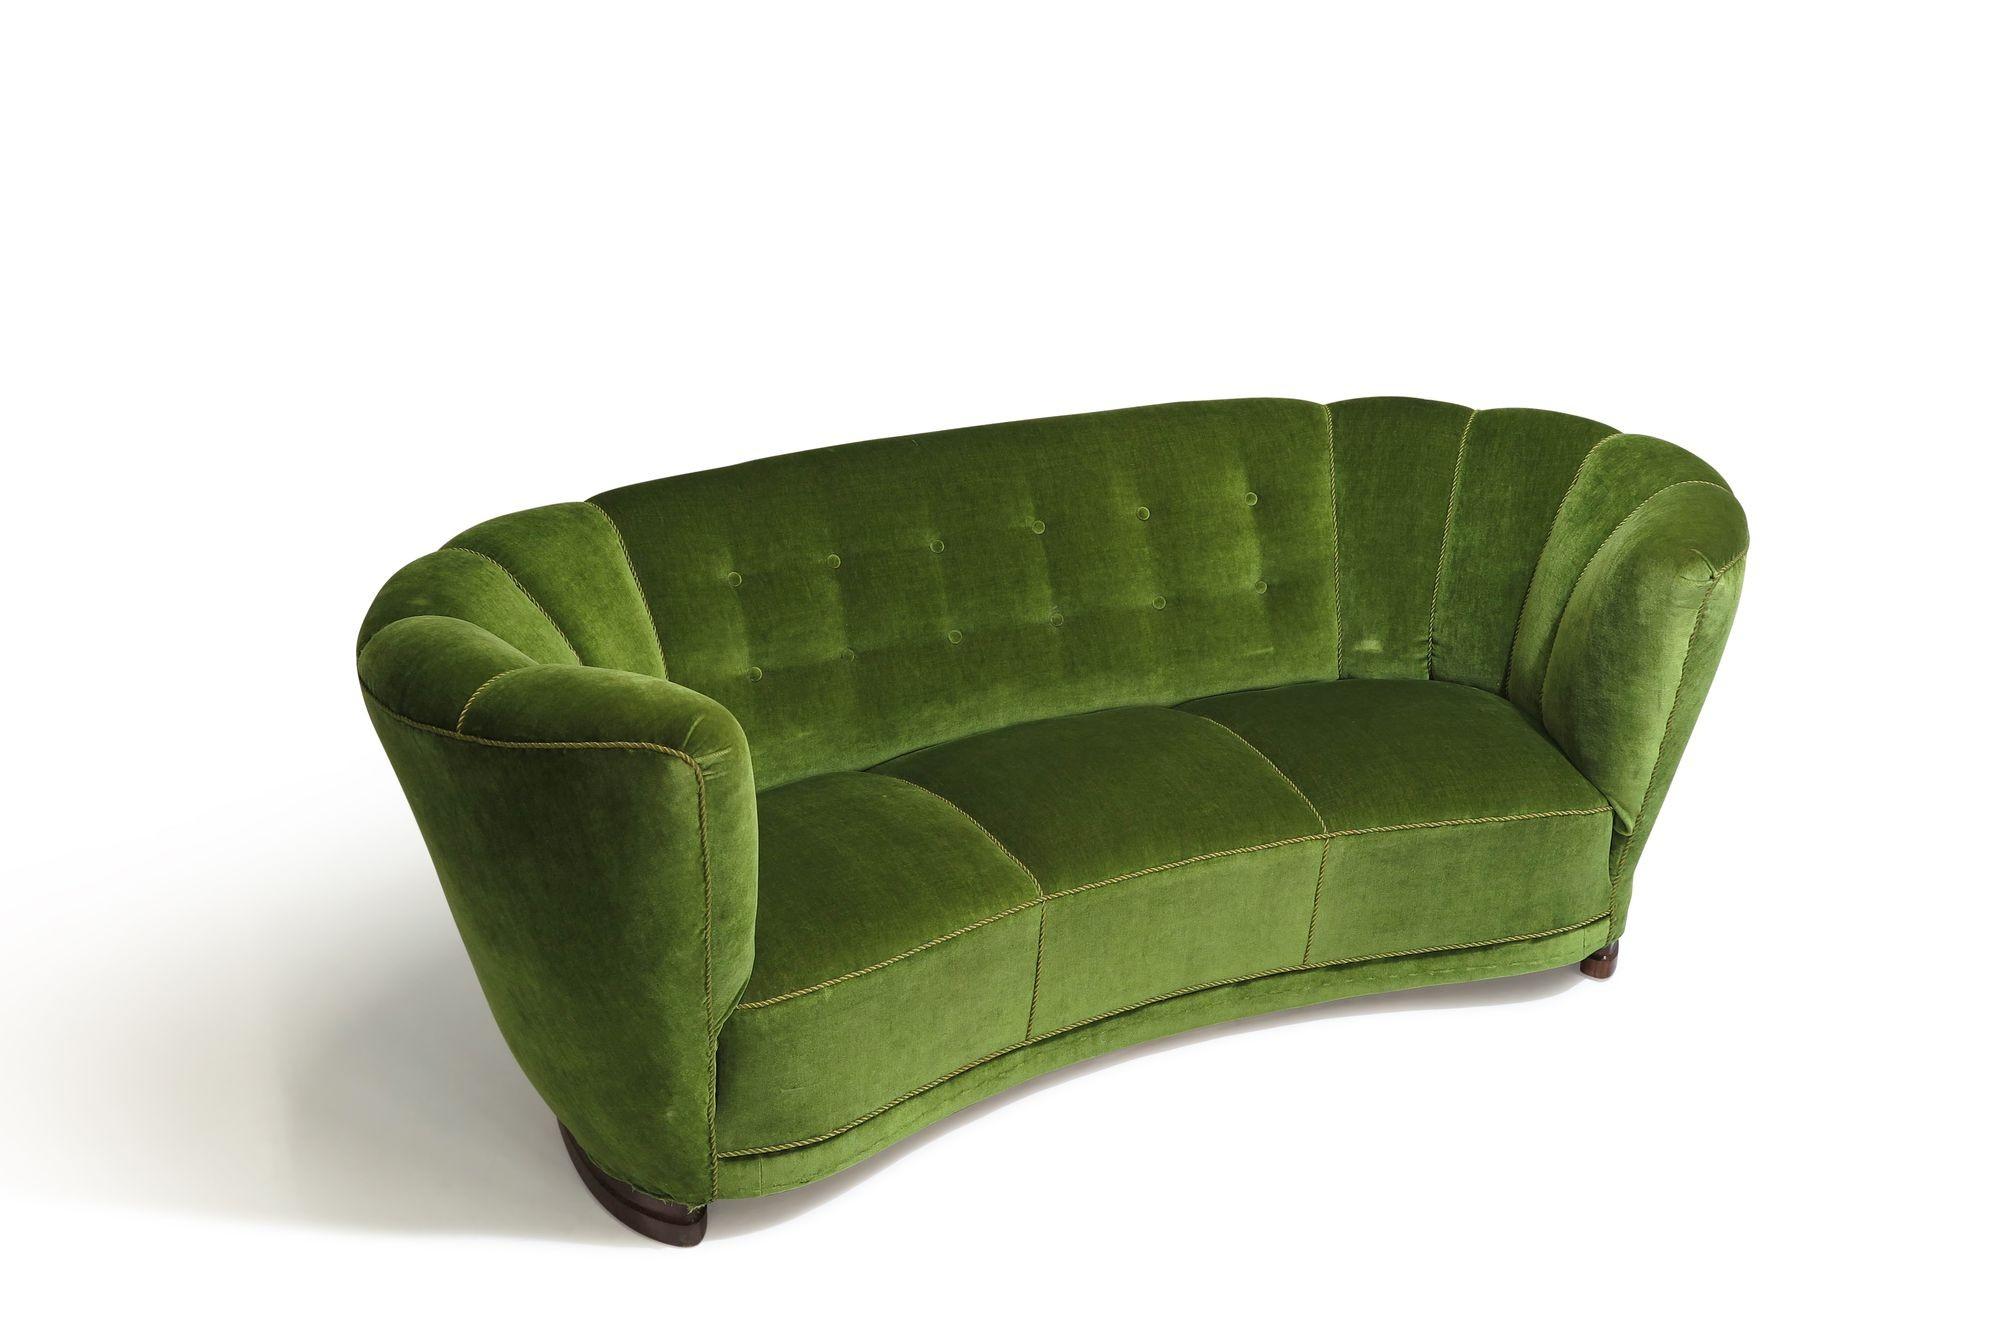 Superbe canapé des années 1930 de style déco danois, tapissé de mohair vert olive d'origine. Le canapé est finement fabriqué avec un cadre en bois massif, des ressorts à huit voies en cuivre noués à la main, du crin de cheval et un padding en coton,